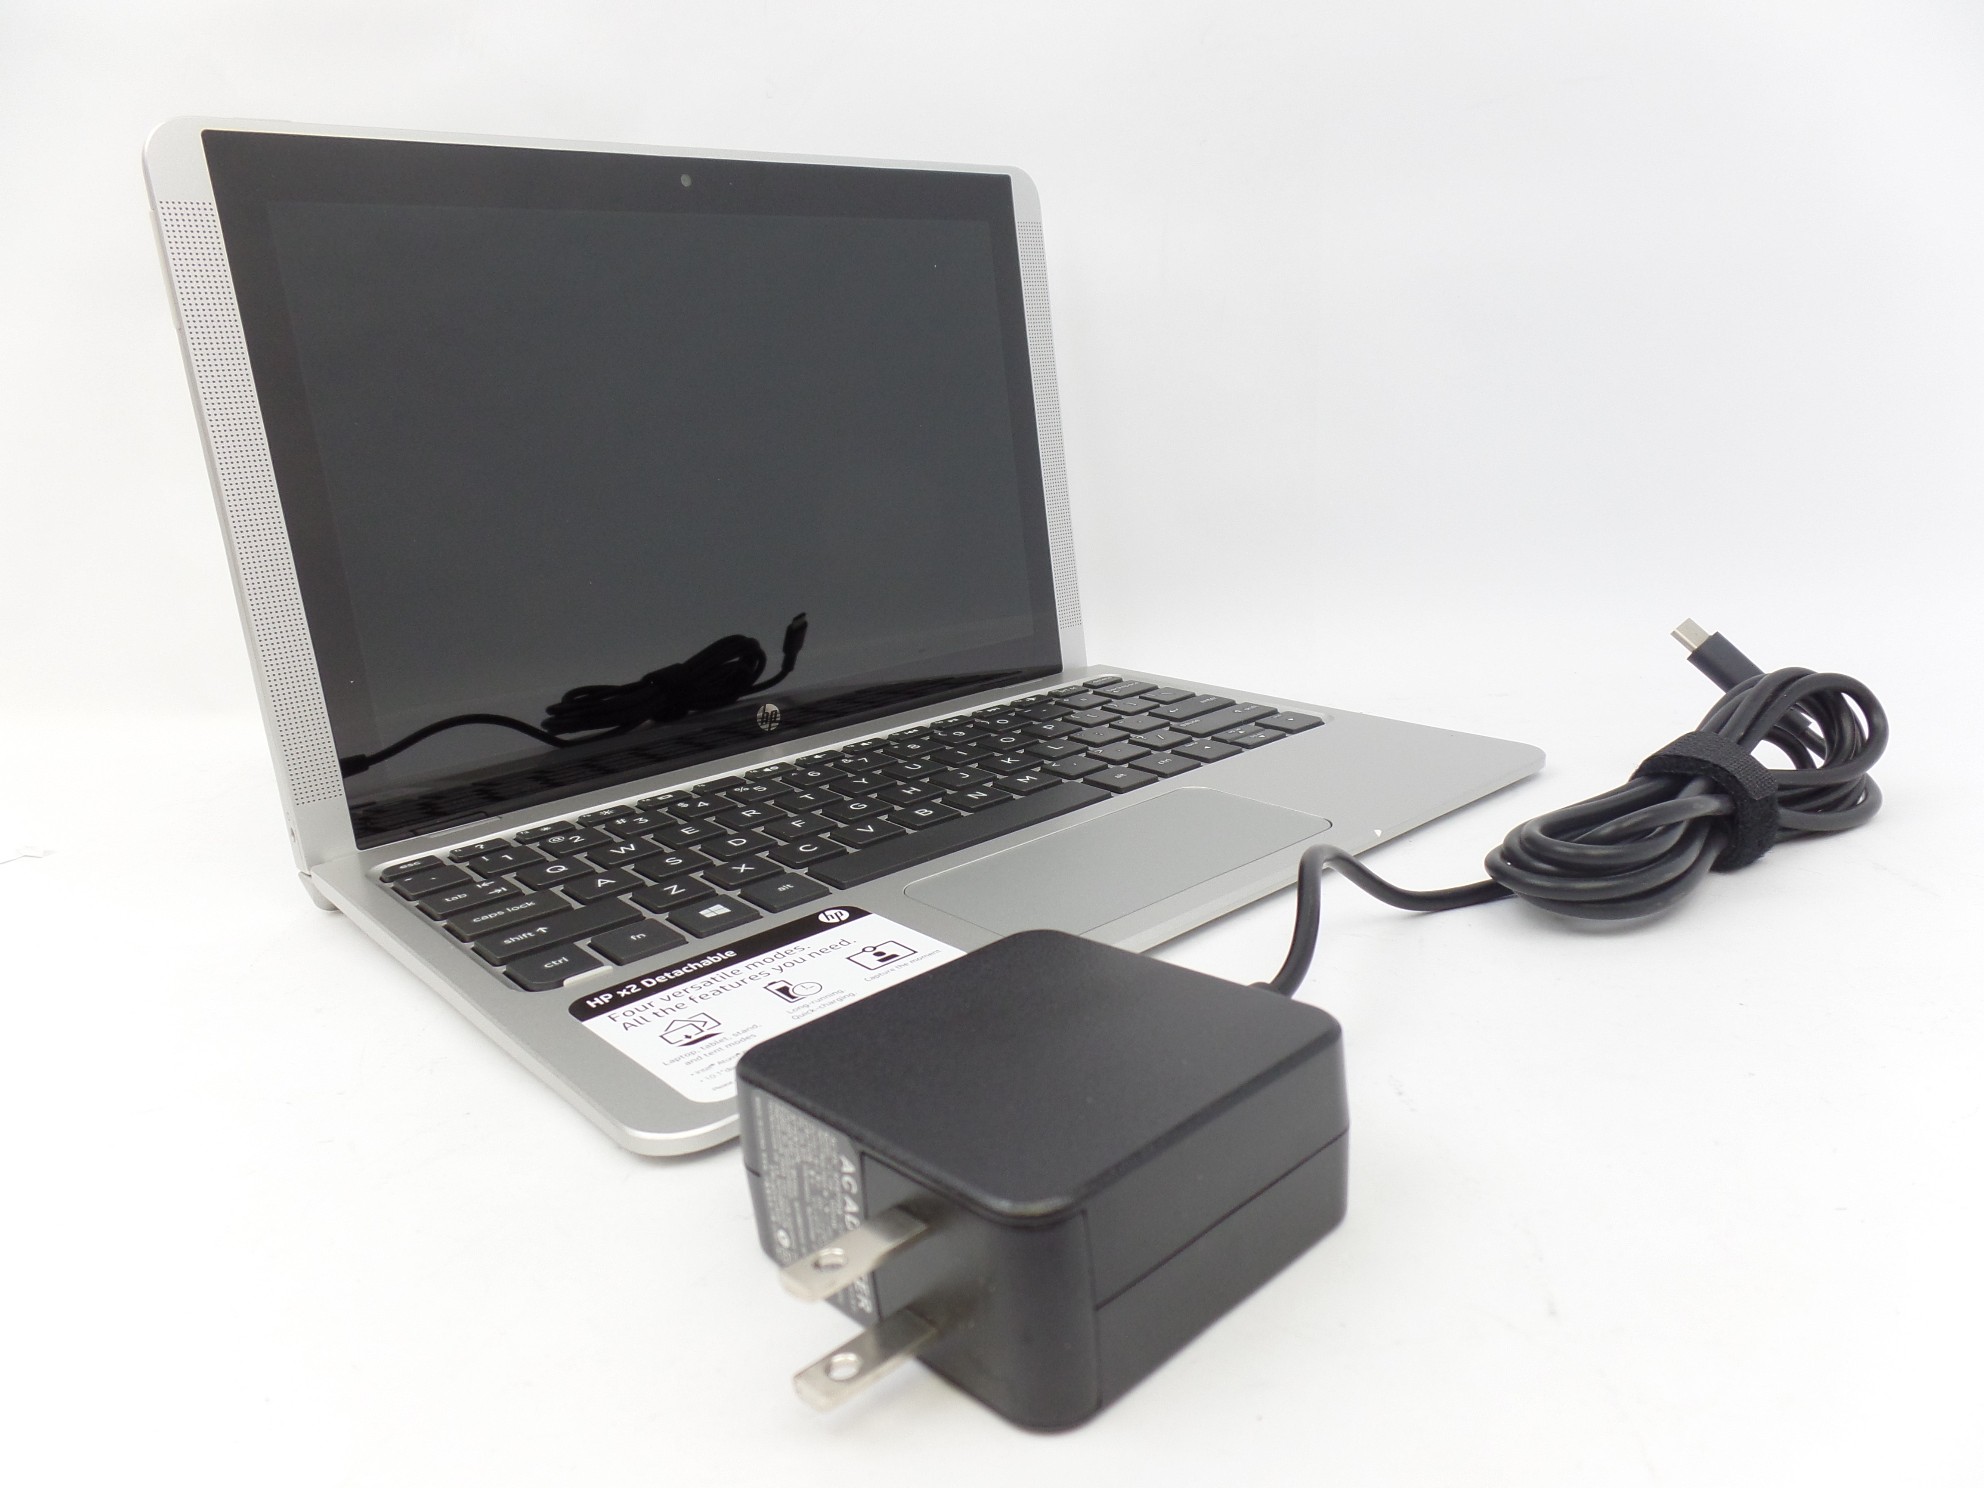 HP x2 10-p010wm 10.1" IPS Touch Atom x5-Z8350 4GB 64GB 2in1 Tablet + Keyboard